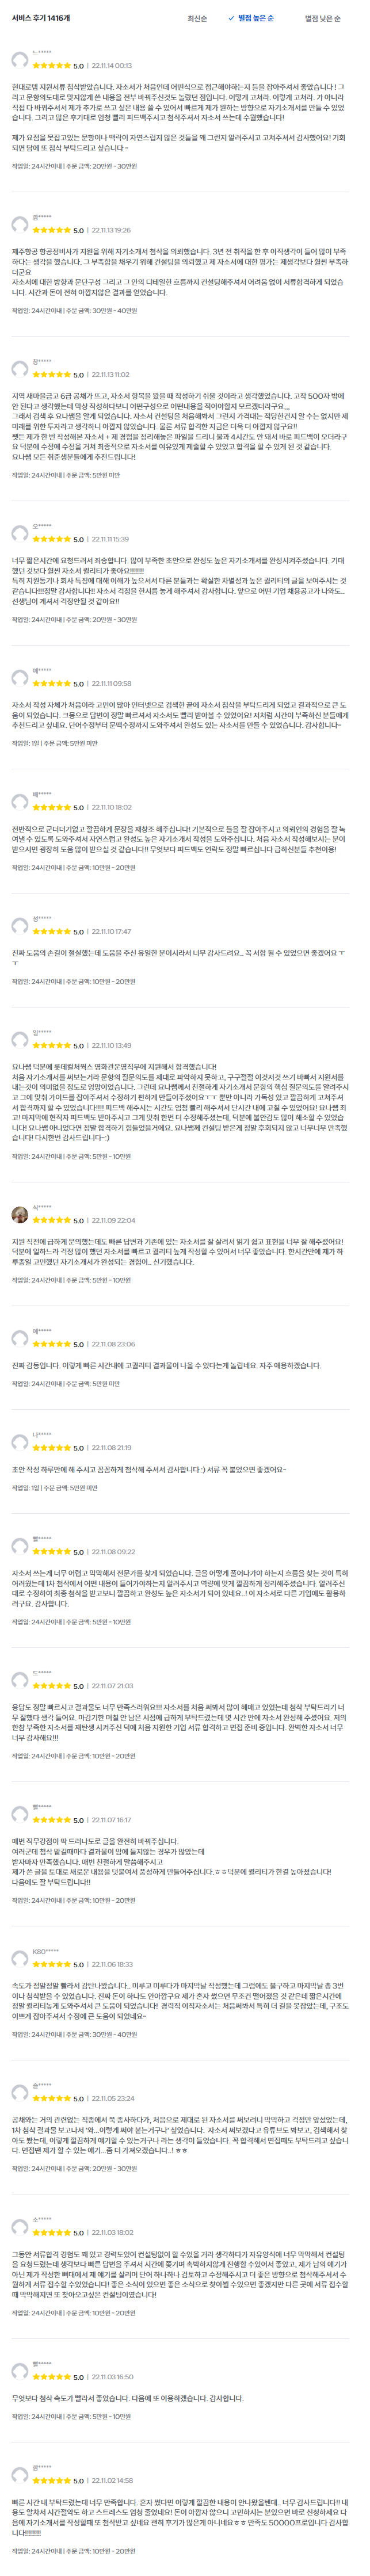 자기소개서 첨삭 대필 서비스 크몽이용후기/22년 11월기준